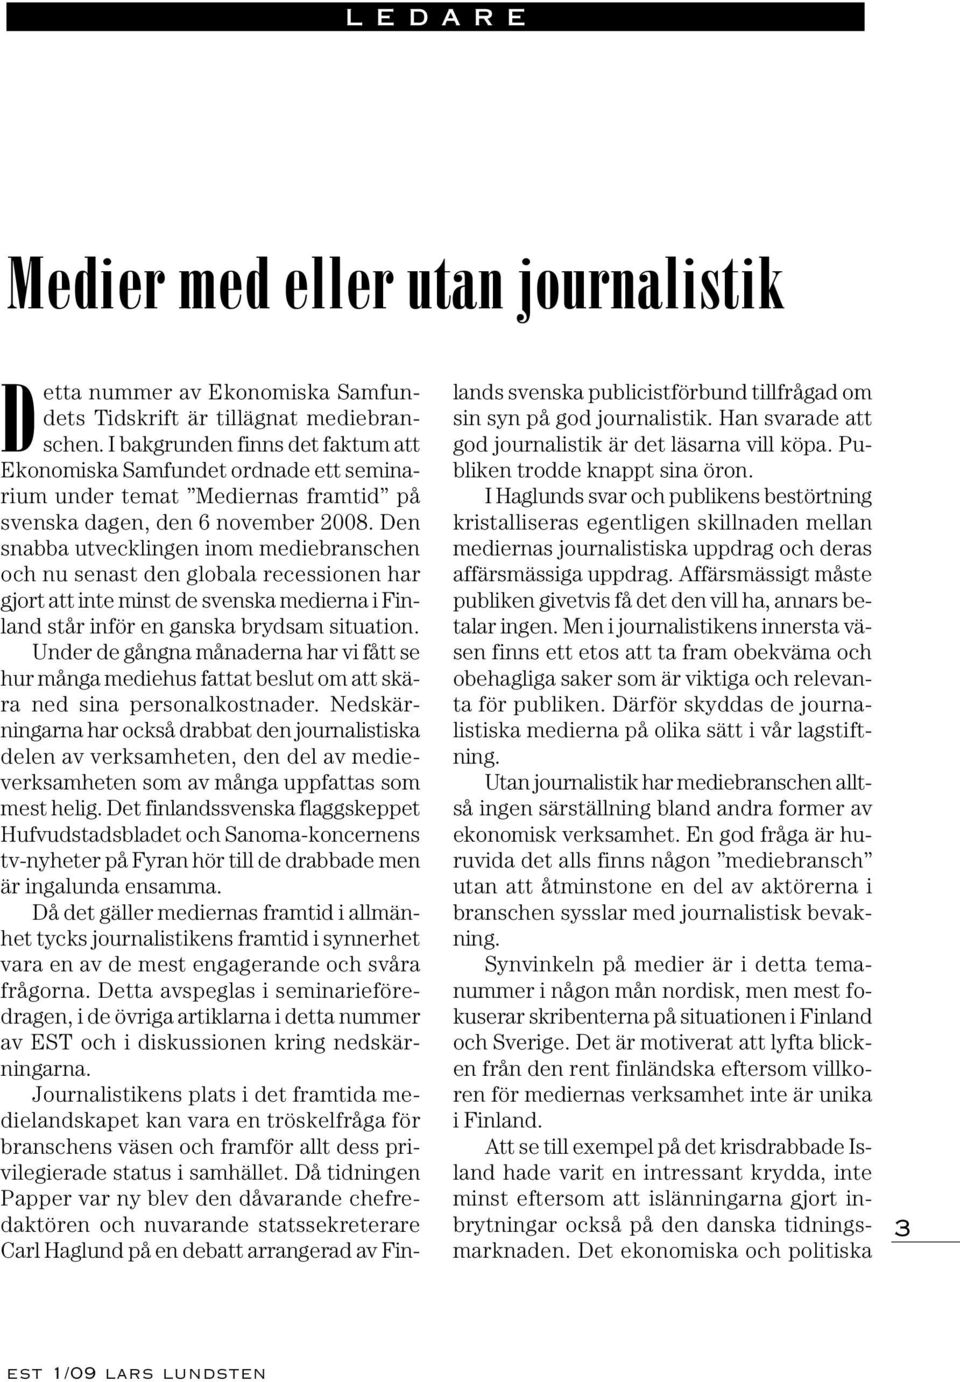 Den snabba utvecklingen inom mediebranschen och nu senast den globala recessionen har gjort att inte minst de svenska medierna i Finland står inför en ganska brydsam situation.